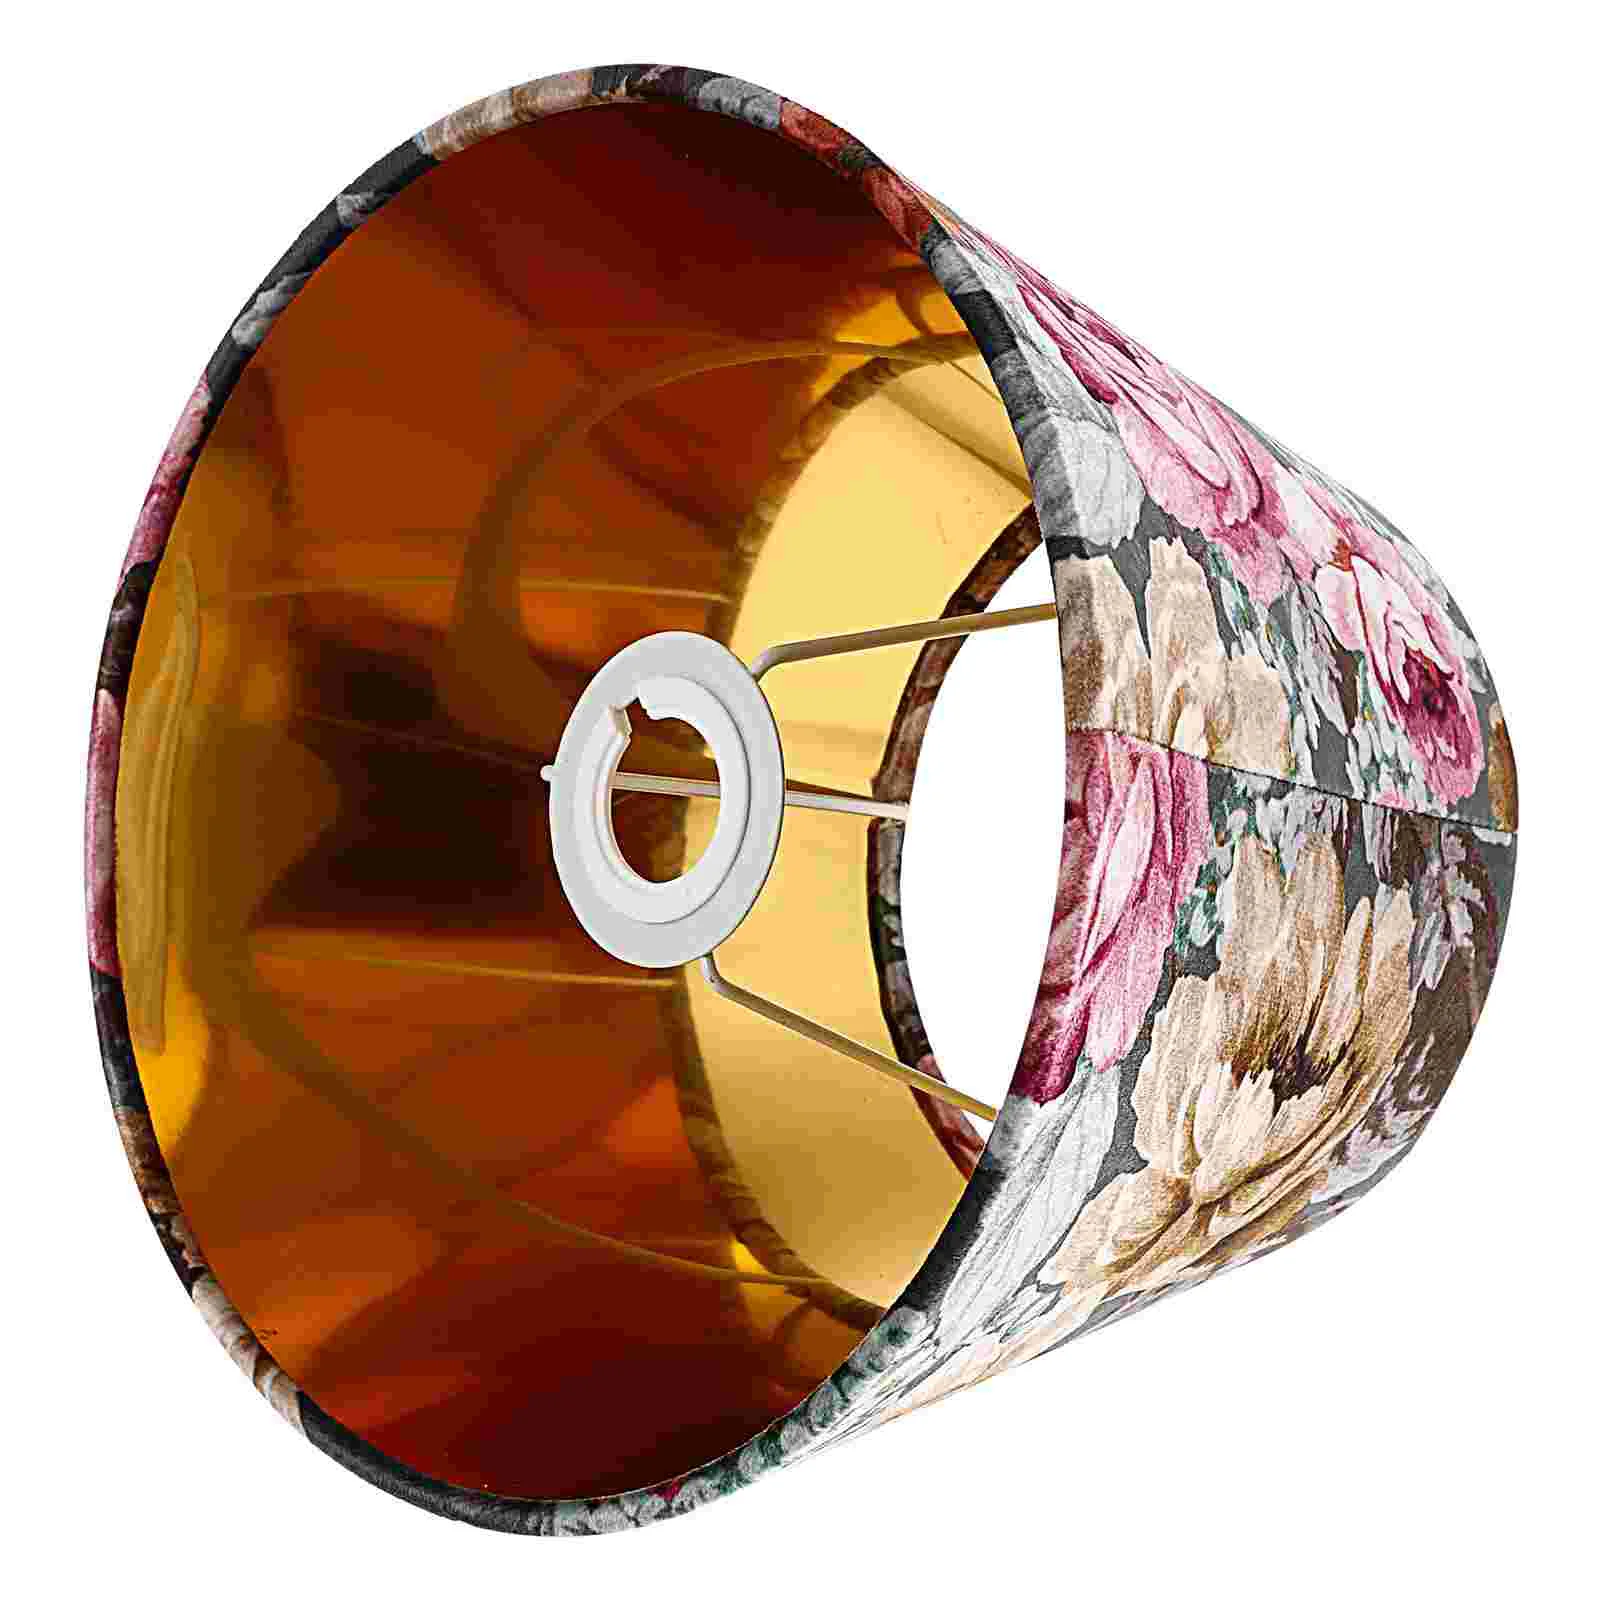 

Декоративный абажур для лампы в стиле ретро, пыленепроницаемый подарок на новоселье, Изысканный аксессуар для стола